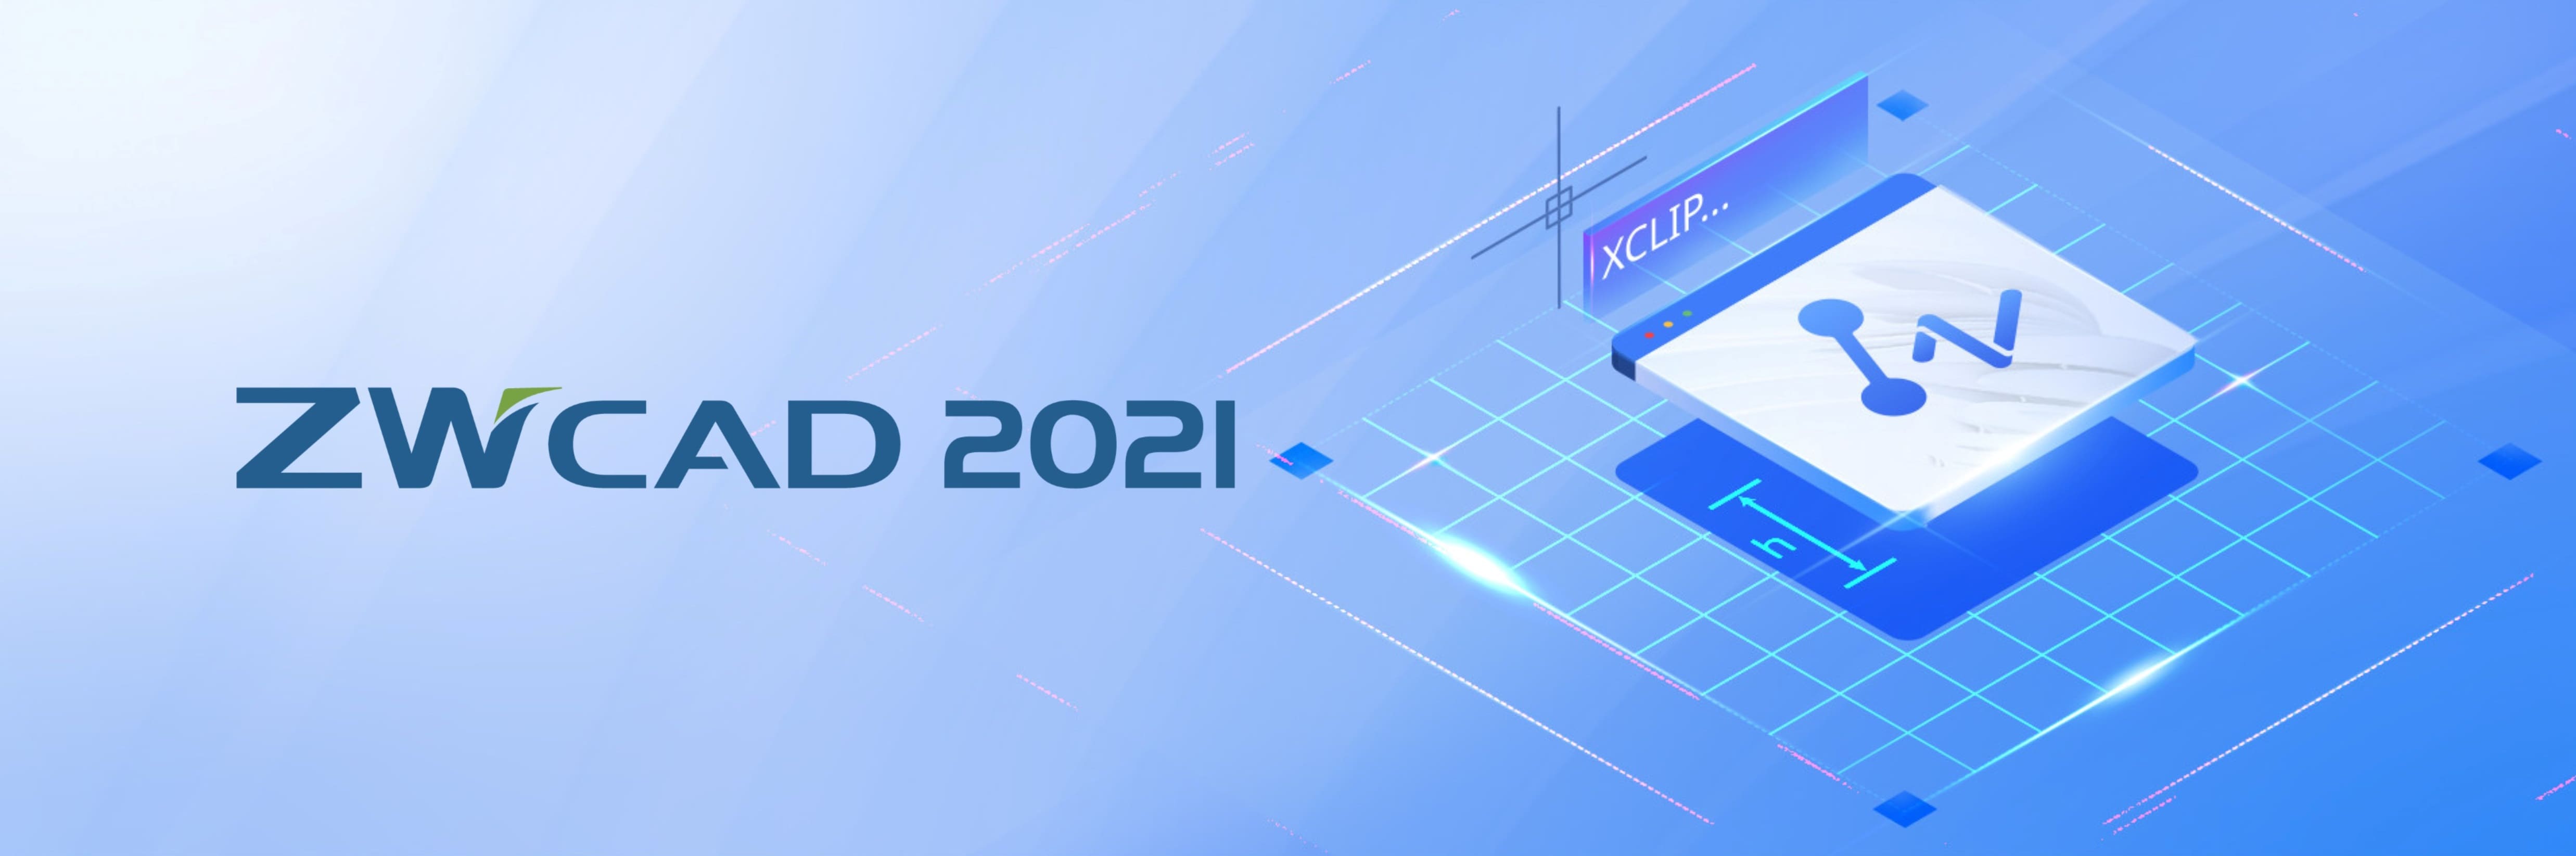 ZWCAD 2021 Eiseko